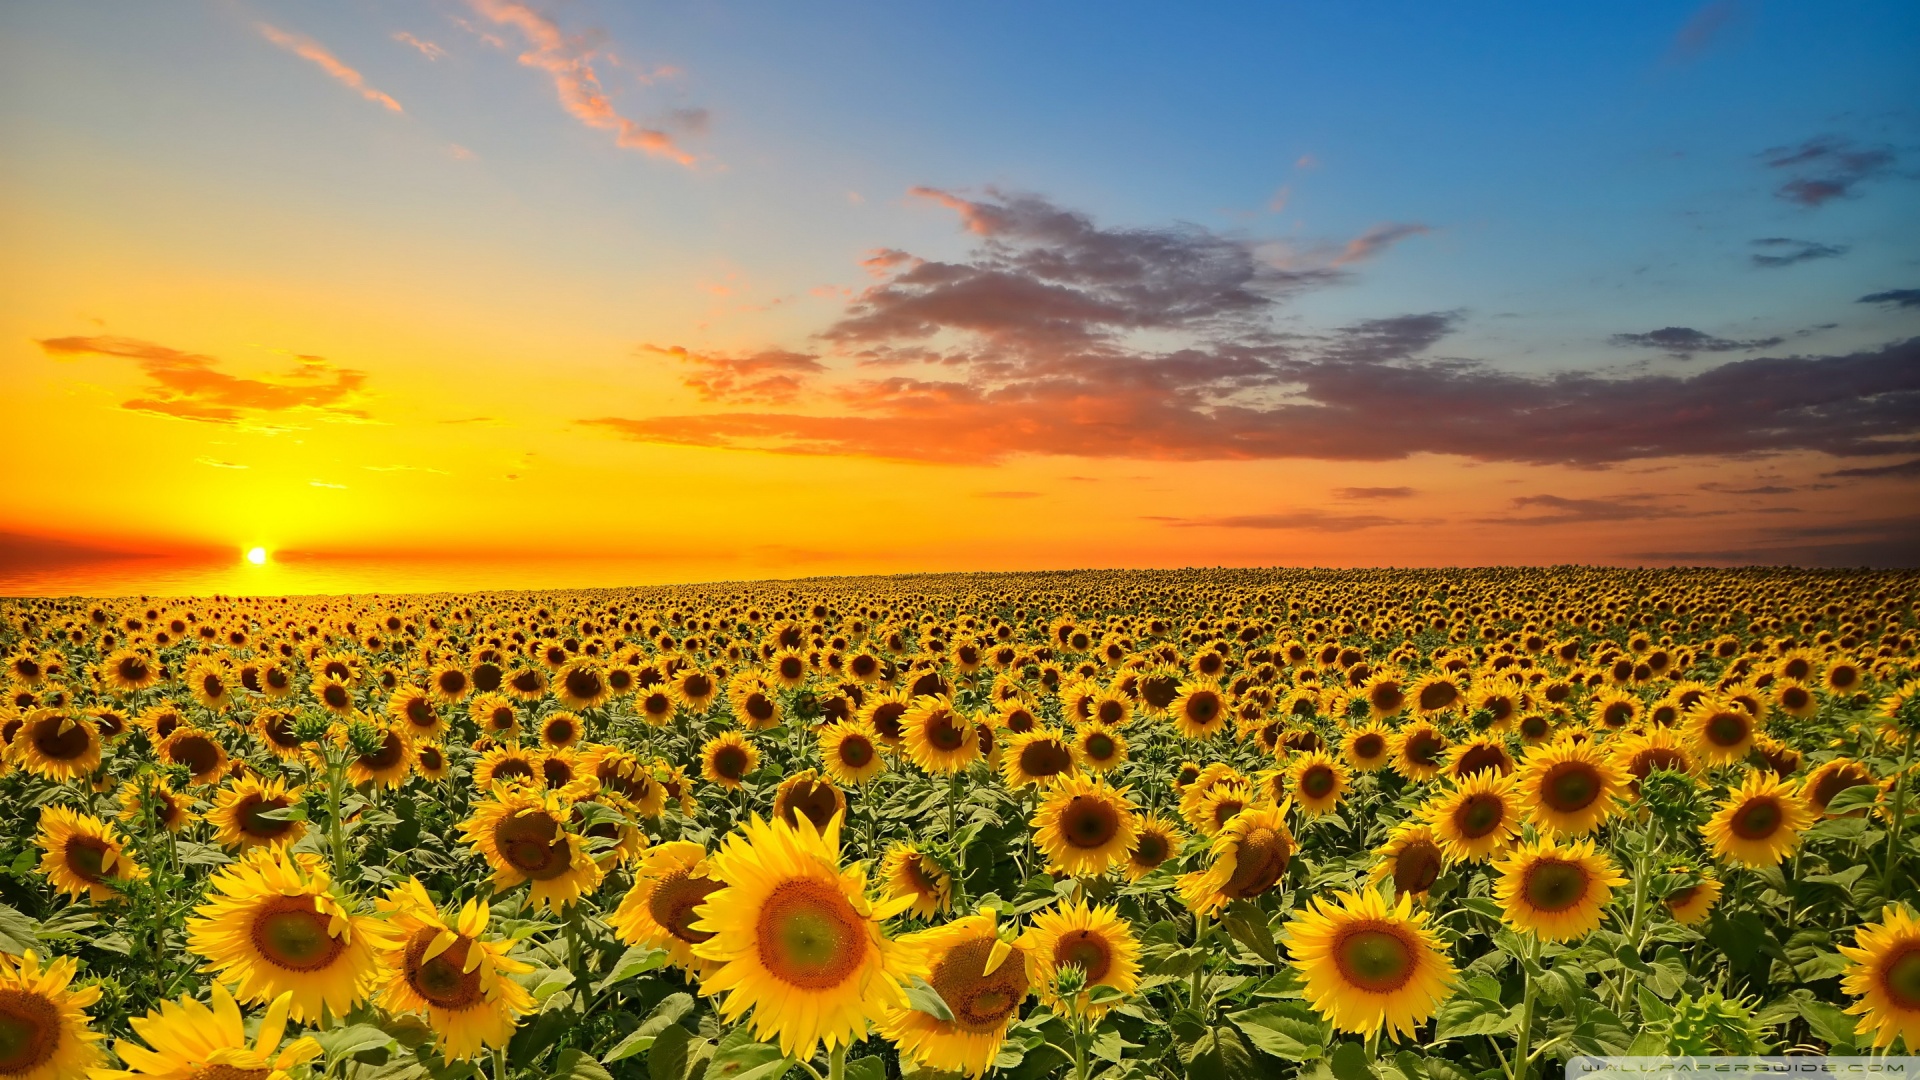 sunset_over_sunflowers_field-wallpaper-1920x1080.jpg